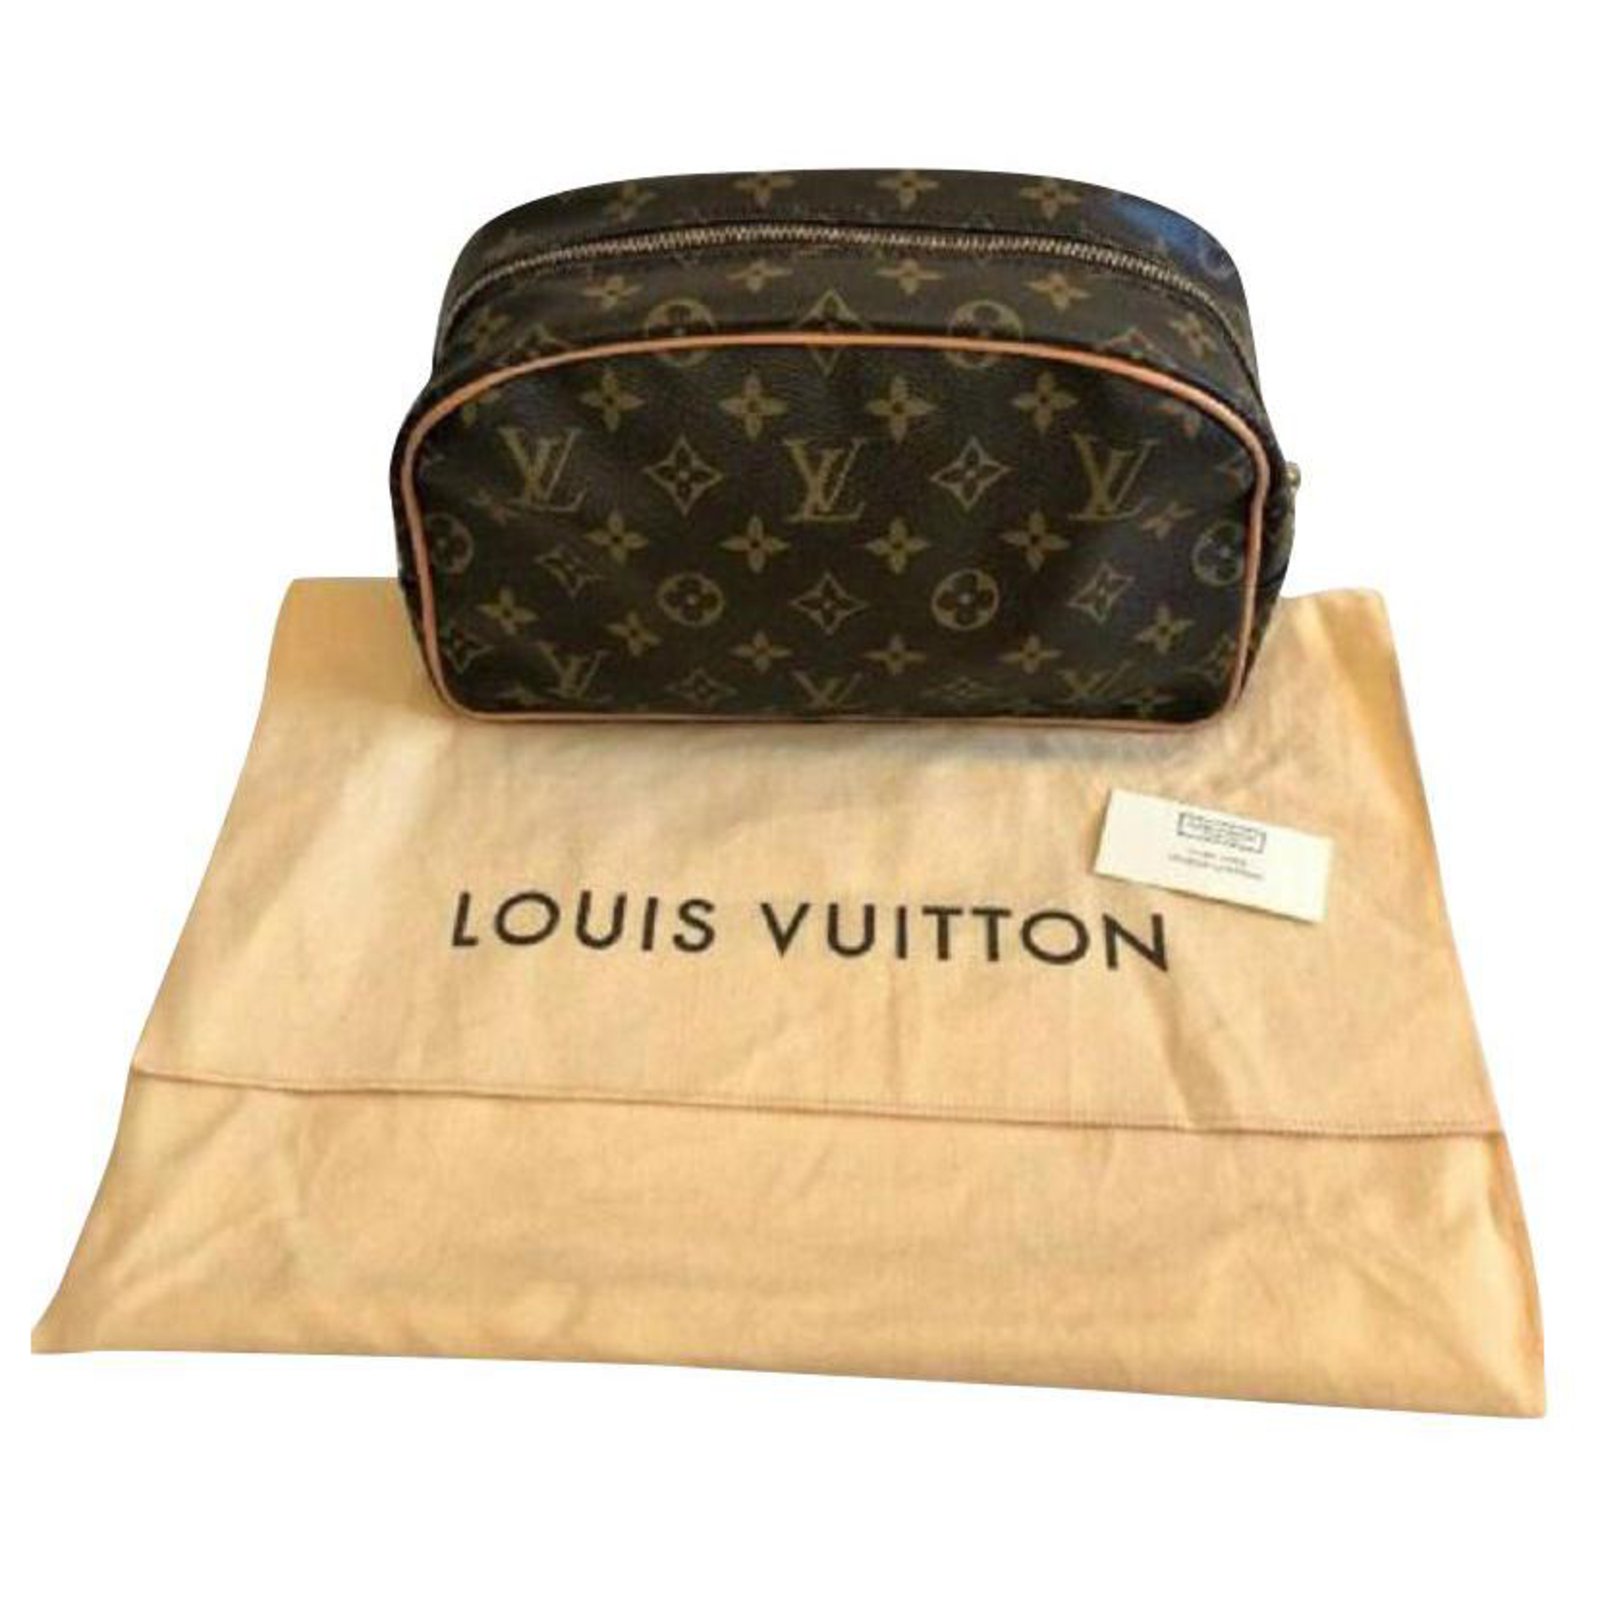 Modas Mora - Neceser para caballeros imitación a Louis Vuitton